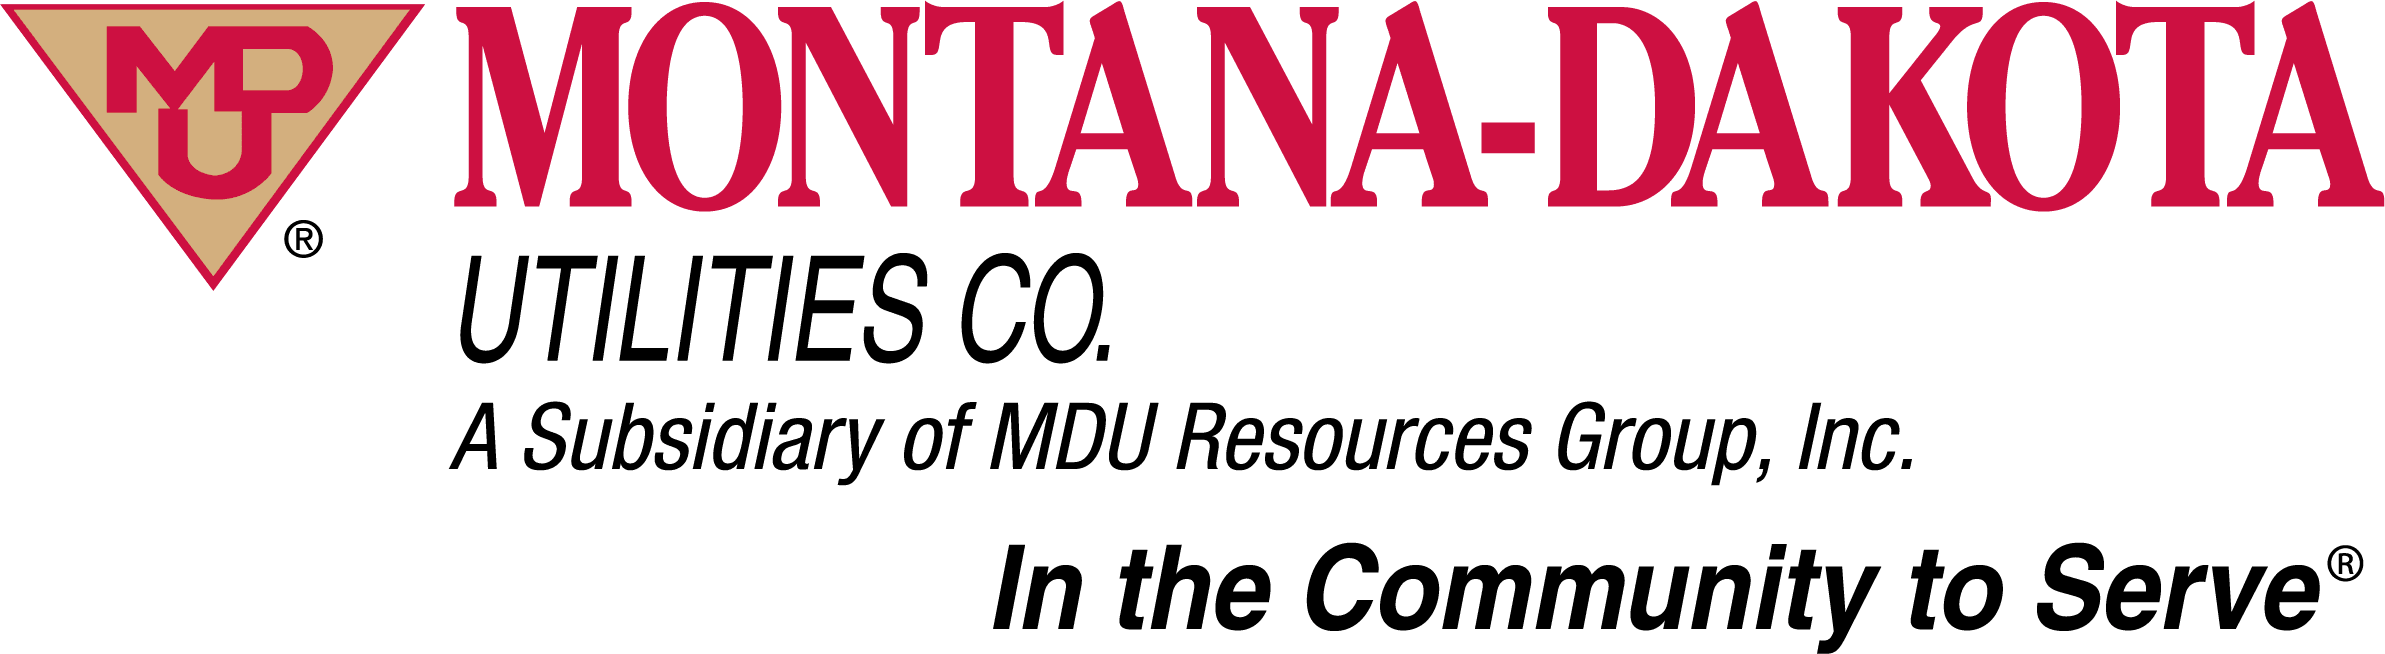 Montana Dakota (MDU) logo